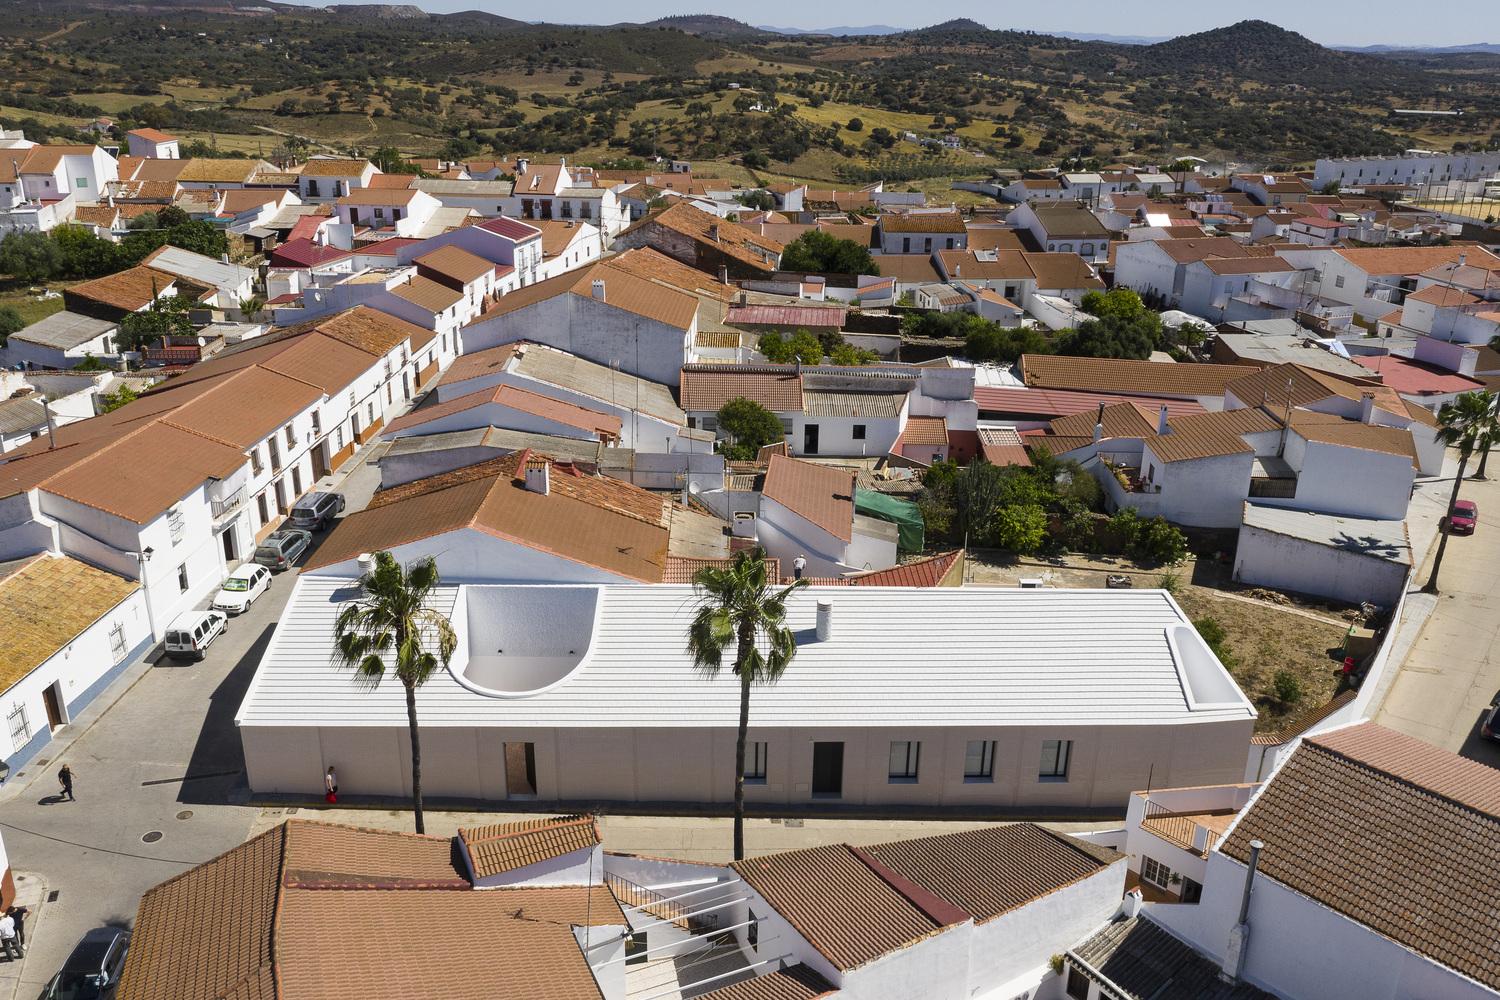 【西班牙特色住宅】運用線條把傳統建築概念融入其中